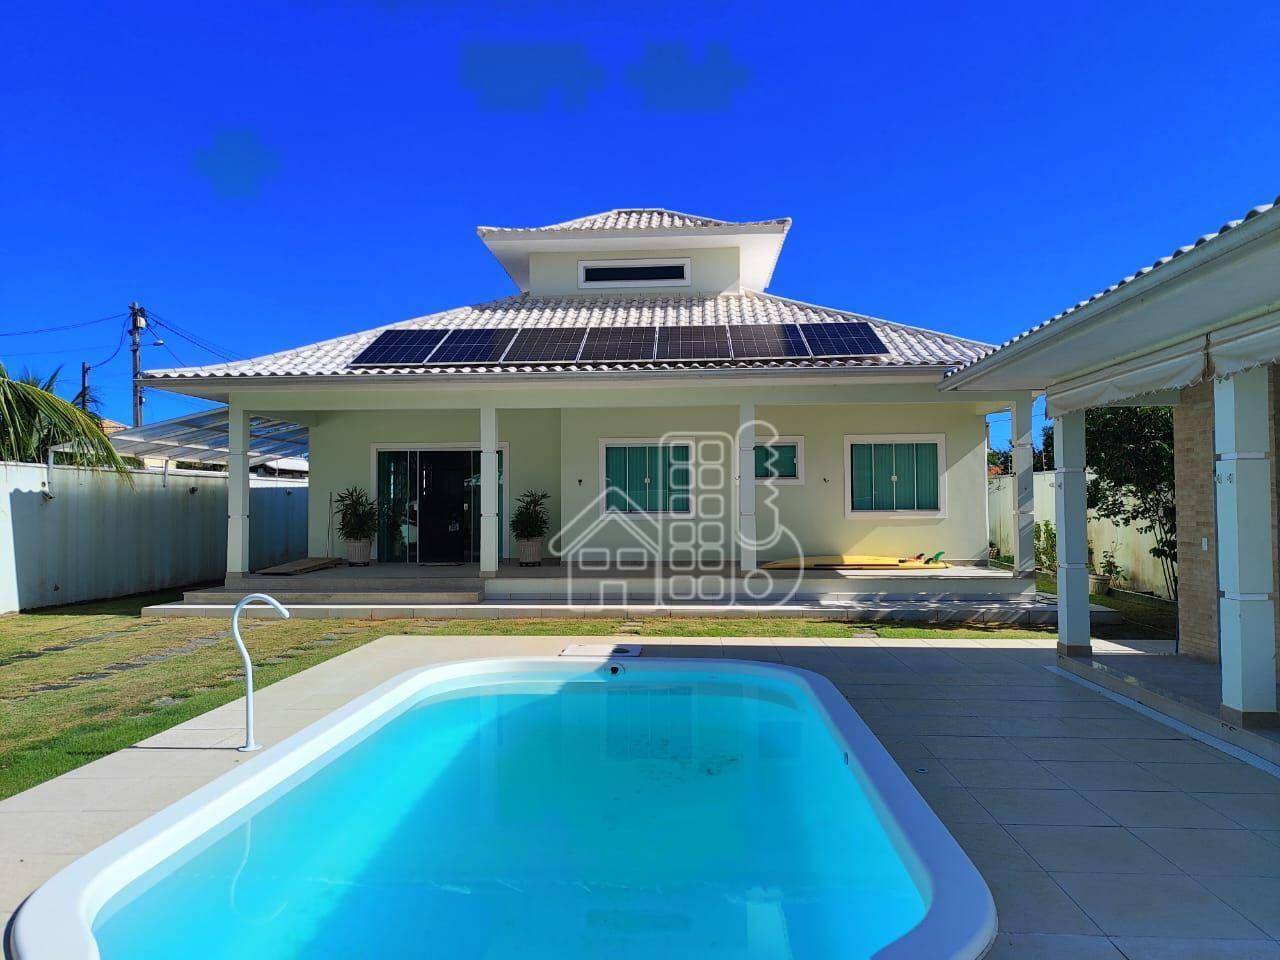 Casa com 3 dormitórios à venda, 300 m² por R$ 800.000,01 - Jaconé (Ponta Negra) - Maricá/RJ